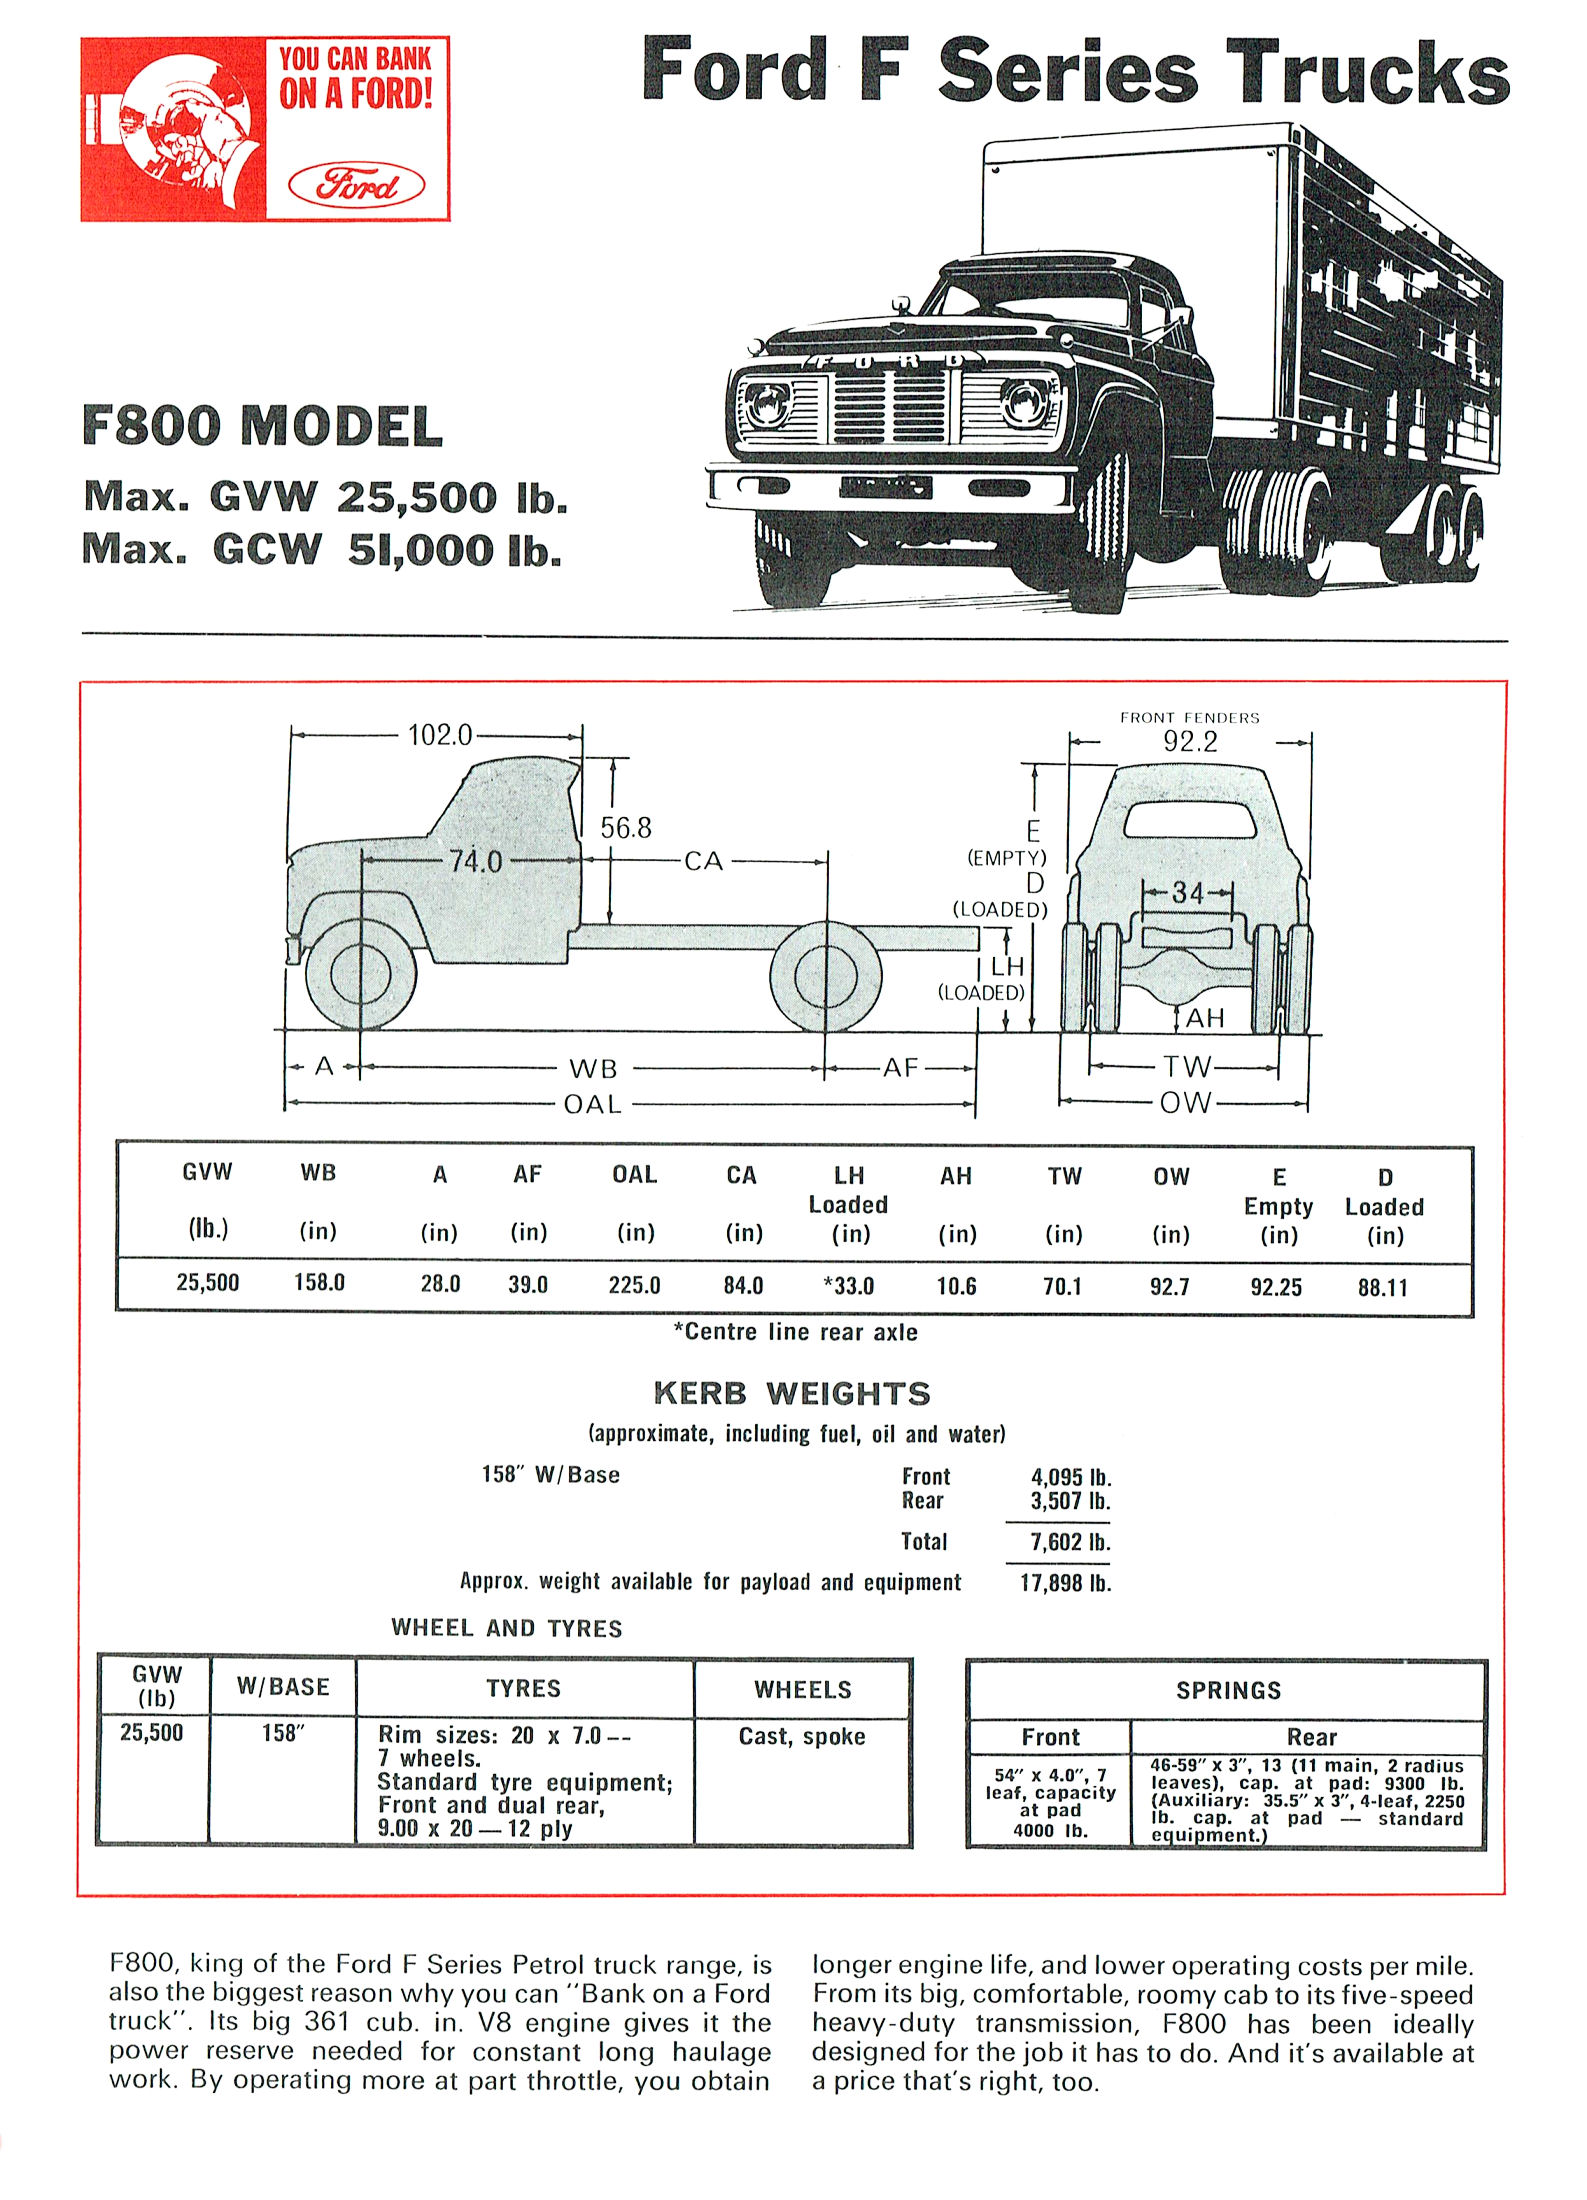 1968 Ford Trucks (Aus)-iF8a.jpg-2022-12-7 13.27.17